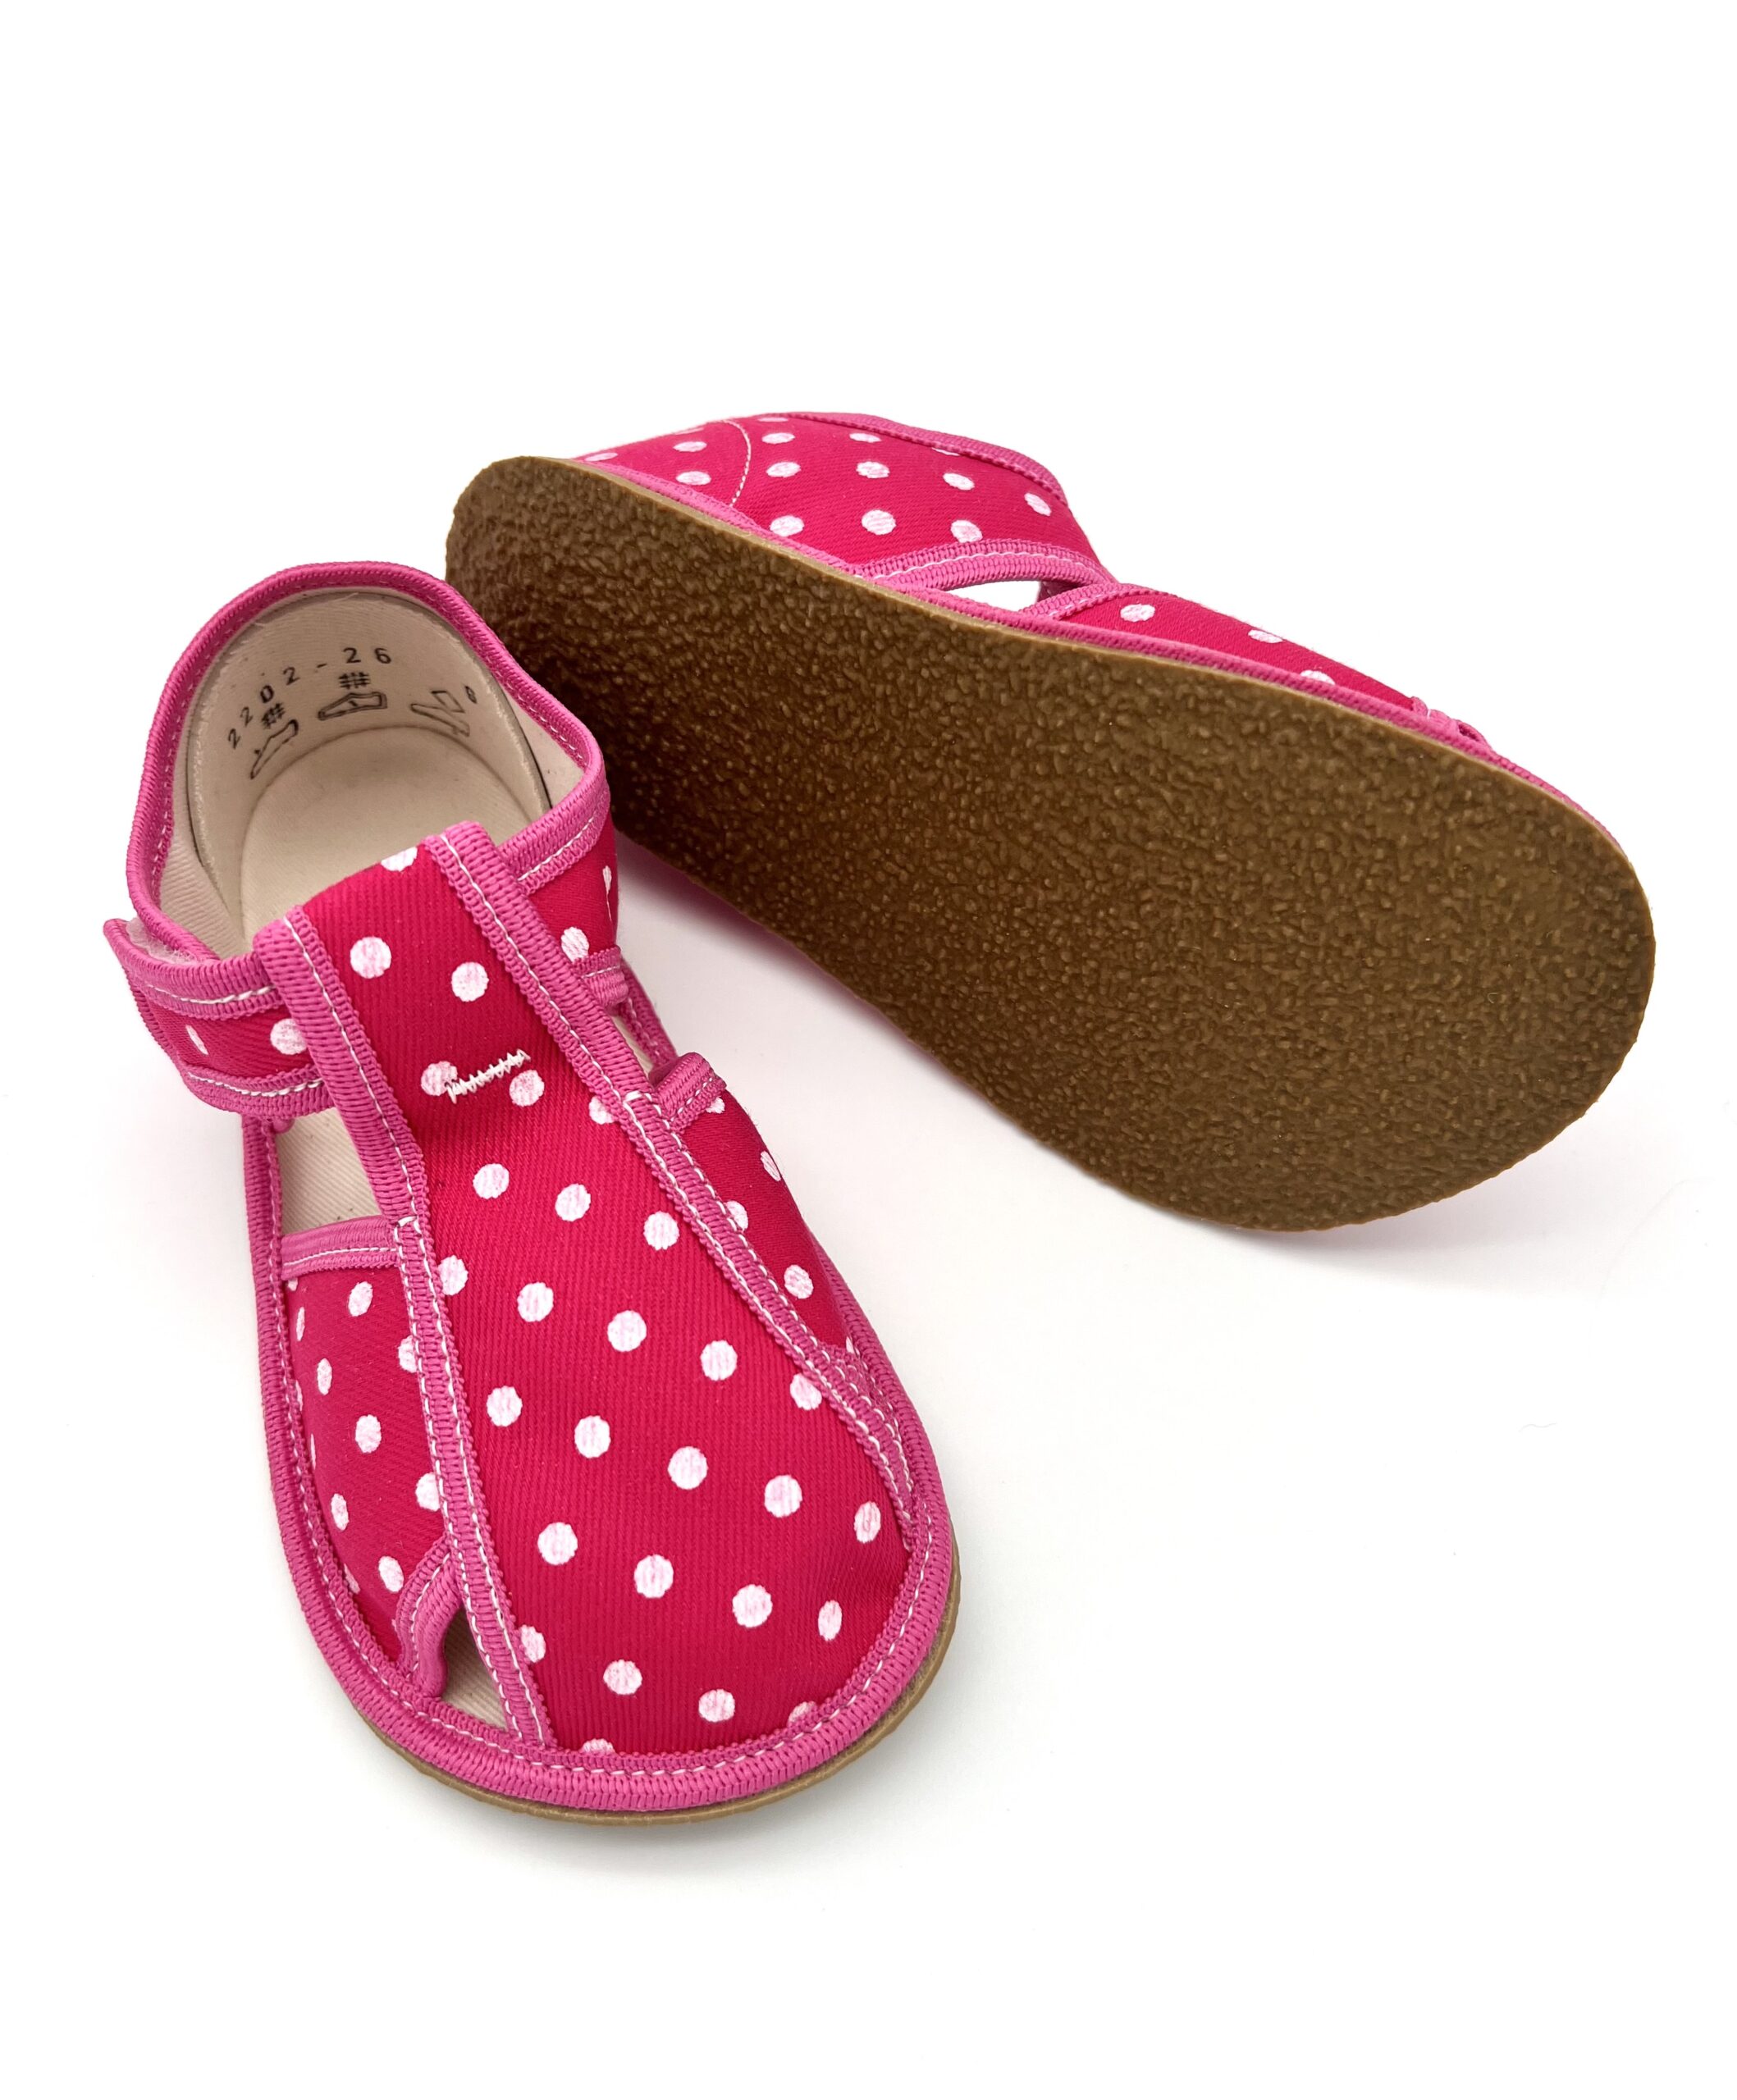 Baby Bare sisejalatsid Pink Dot Laste barefoot jalatsid - HellyK - Kvaliteetsed lasteriided, villariided, barefoot jalatsid